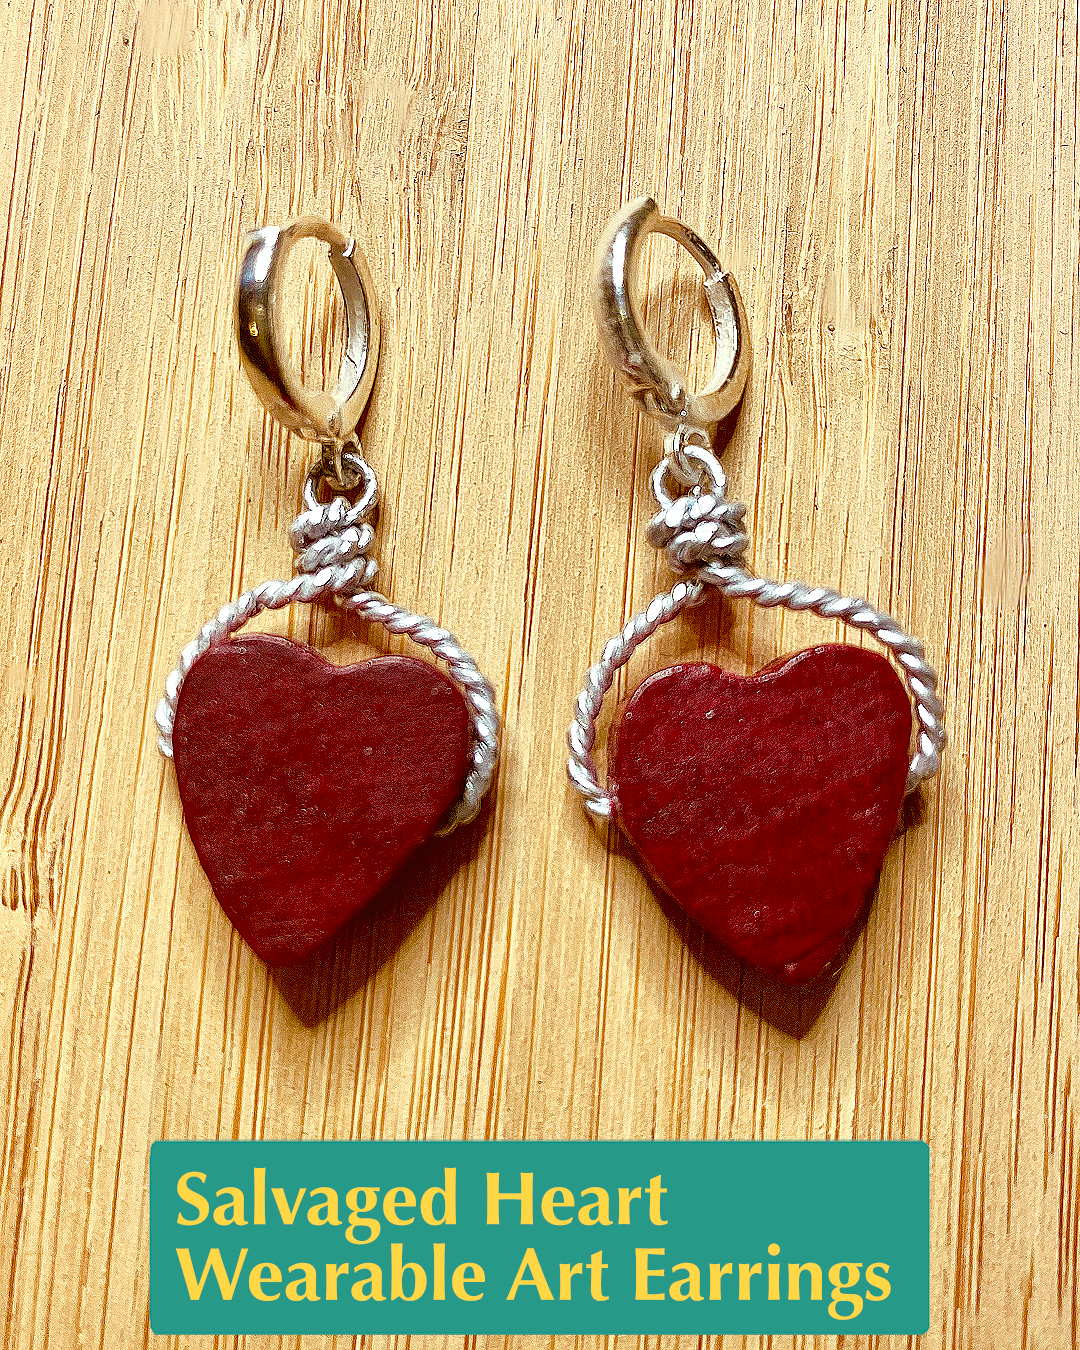 Salvaged Heart Wearable Art Earrings